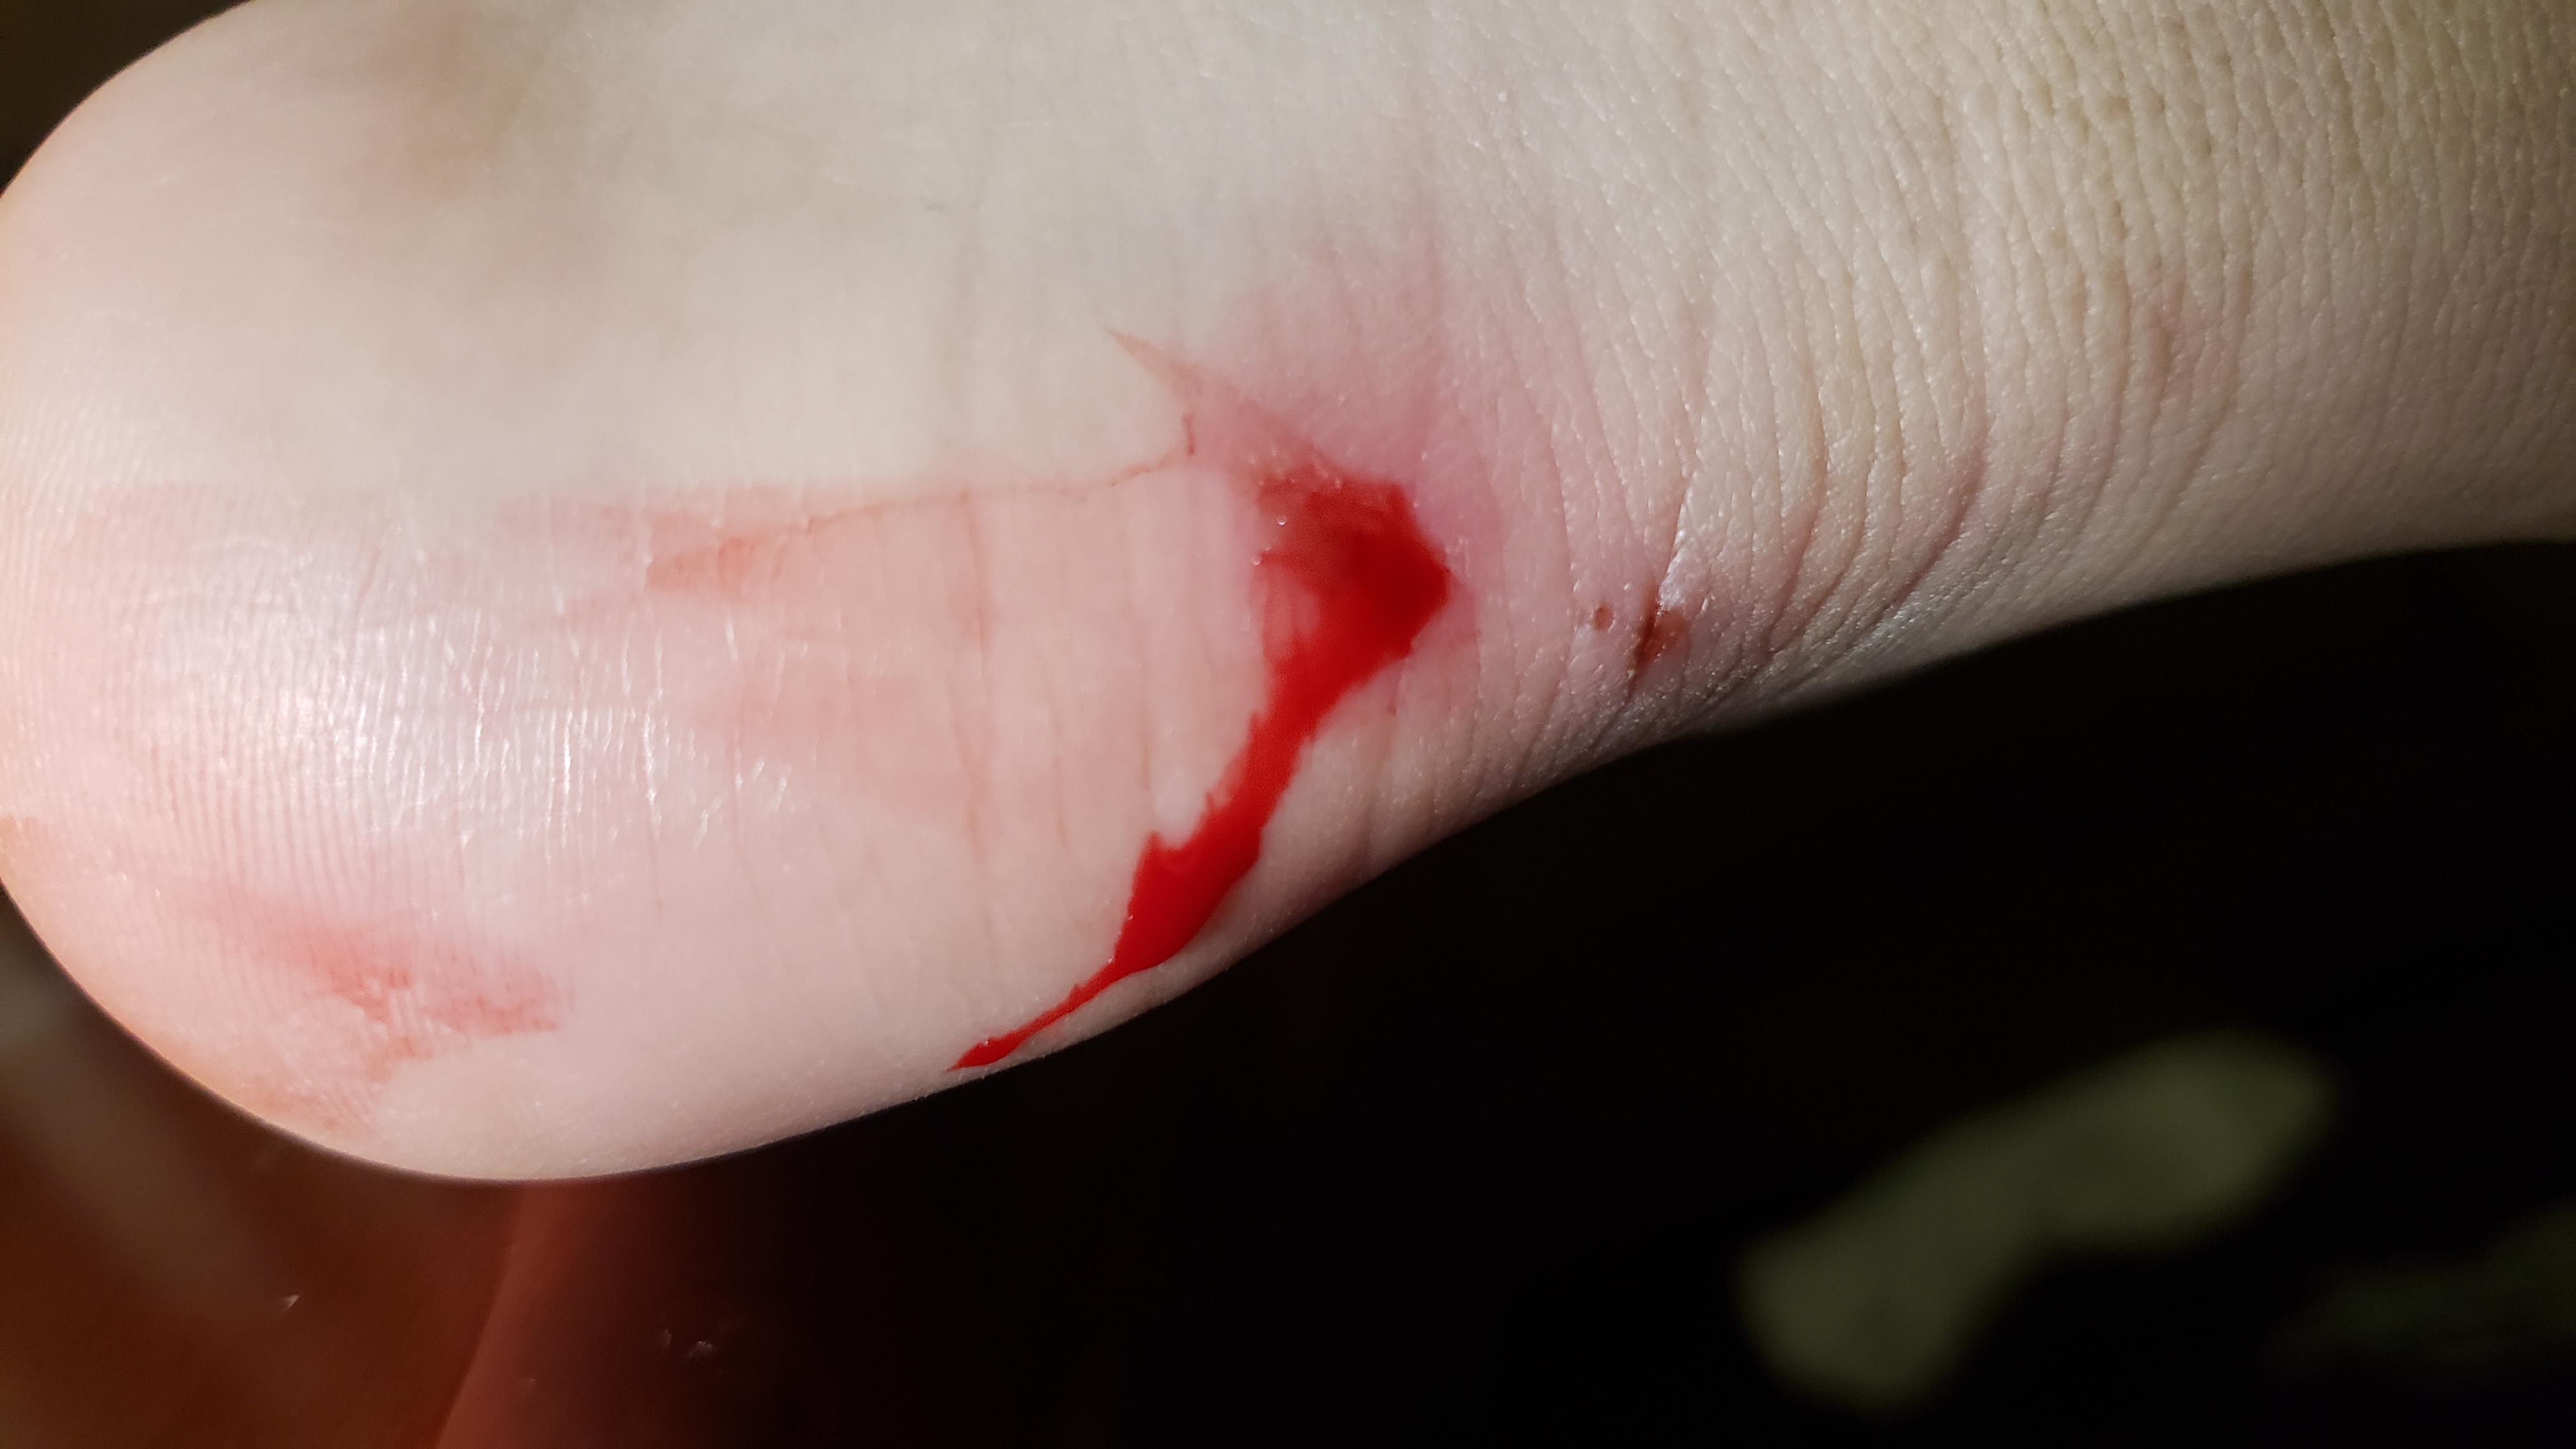 ojbk 我真没想到脚上这个伤这么深 刚才抻了一下留了一堆血 擦掉之后